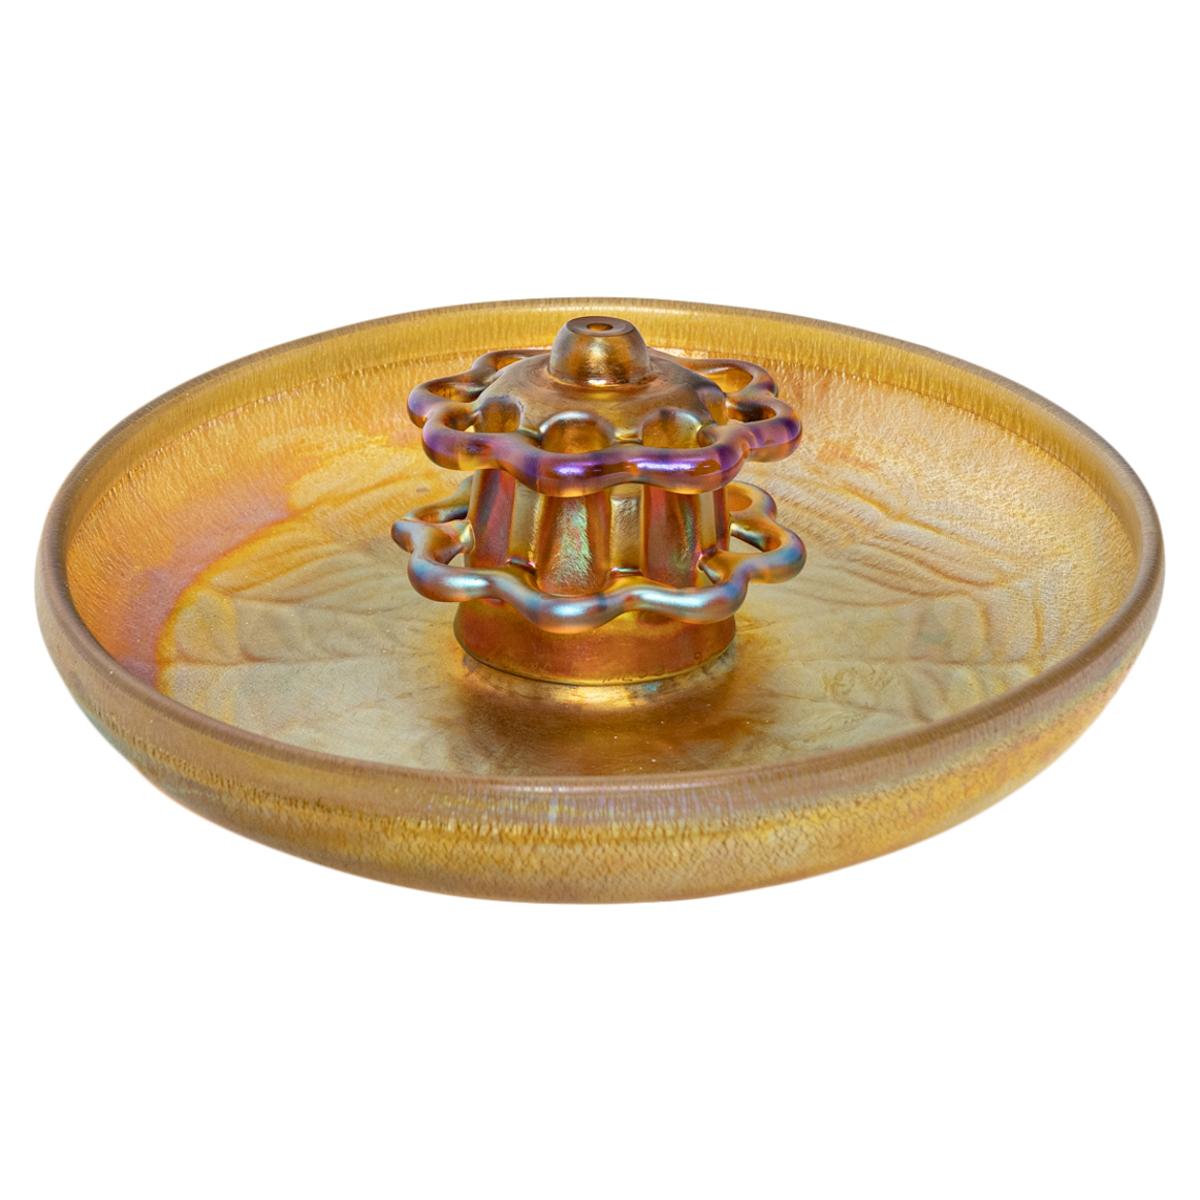 A.I.C. L.C. Antique Art Nouveau Grenouille et bol en verre doré irisé Favrille de Tiffany Furnaces, 1920.
Le bol et la grenouille fleurie sont soufflés à la main dans un verre irisé doré. La grenouille fleurie à deux niveaux s'insère dans le bol peu